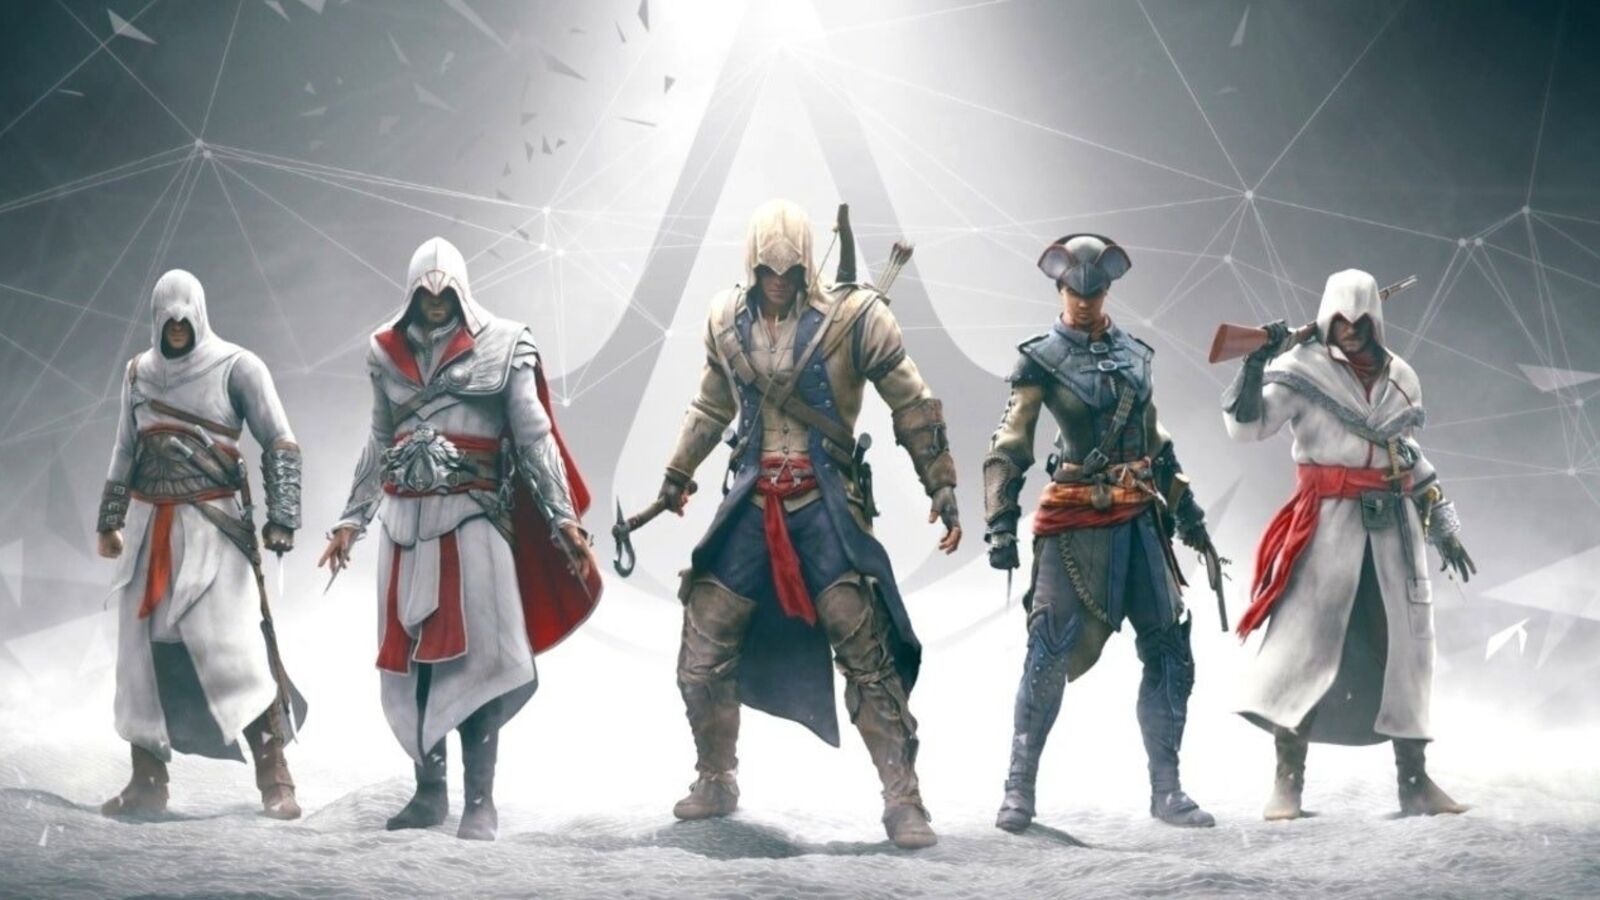 Eurogamer Newscast: Ubisoft moves forwards, bets big on Assassin's